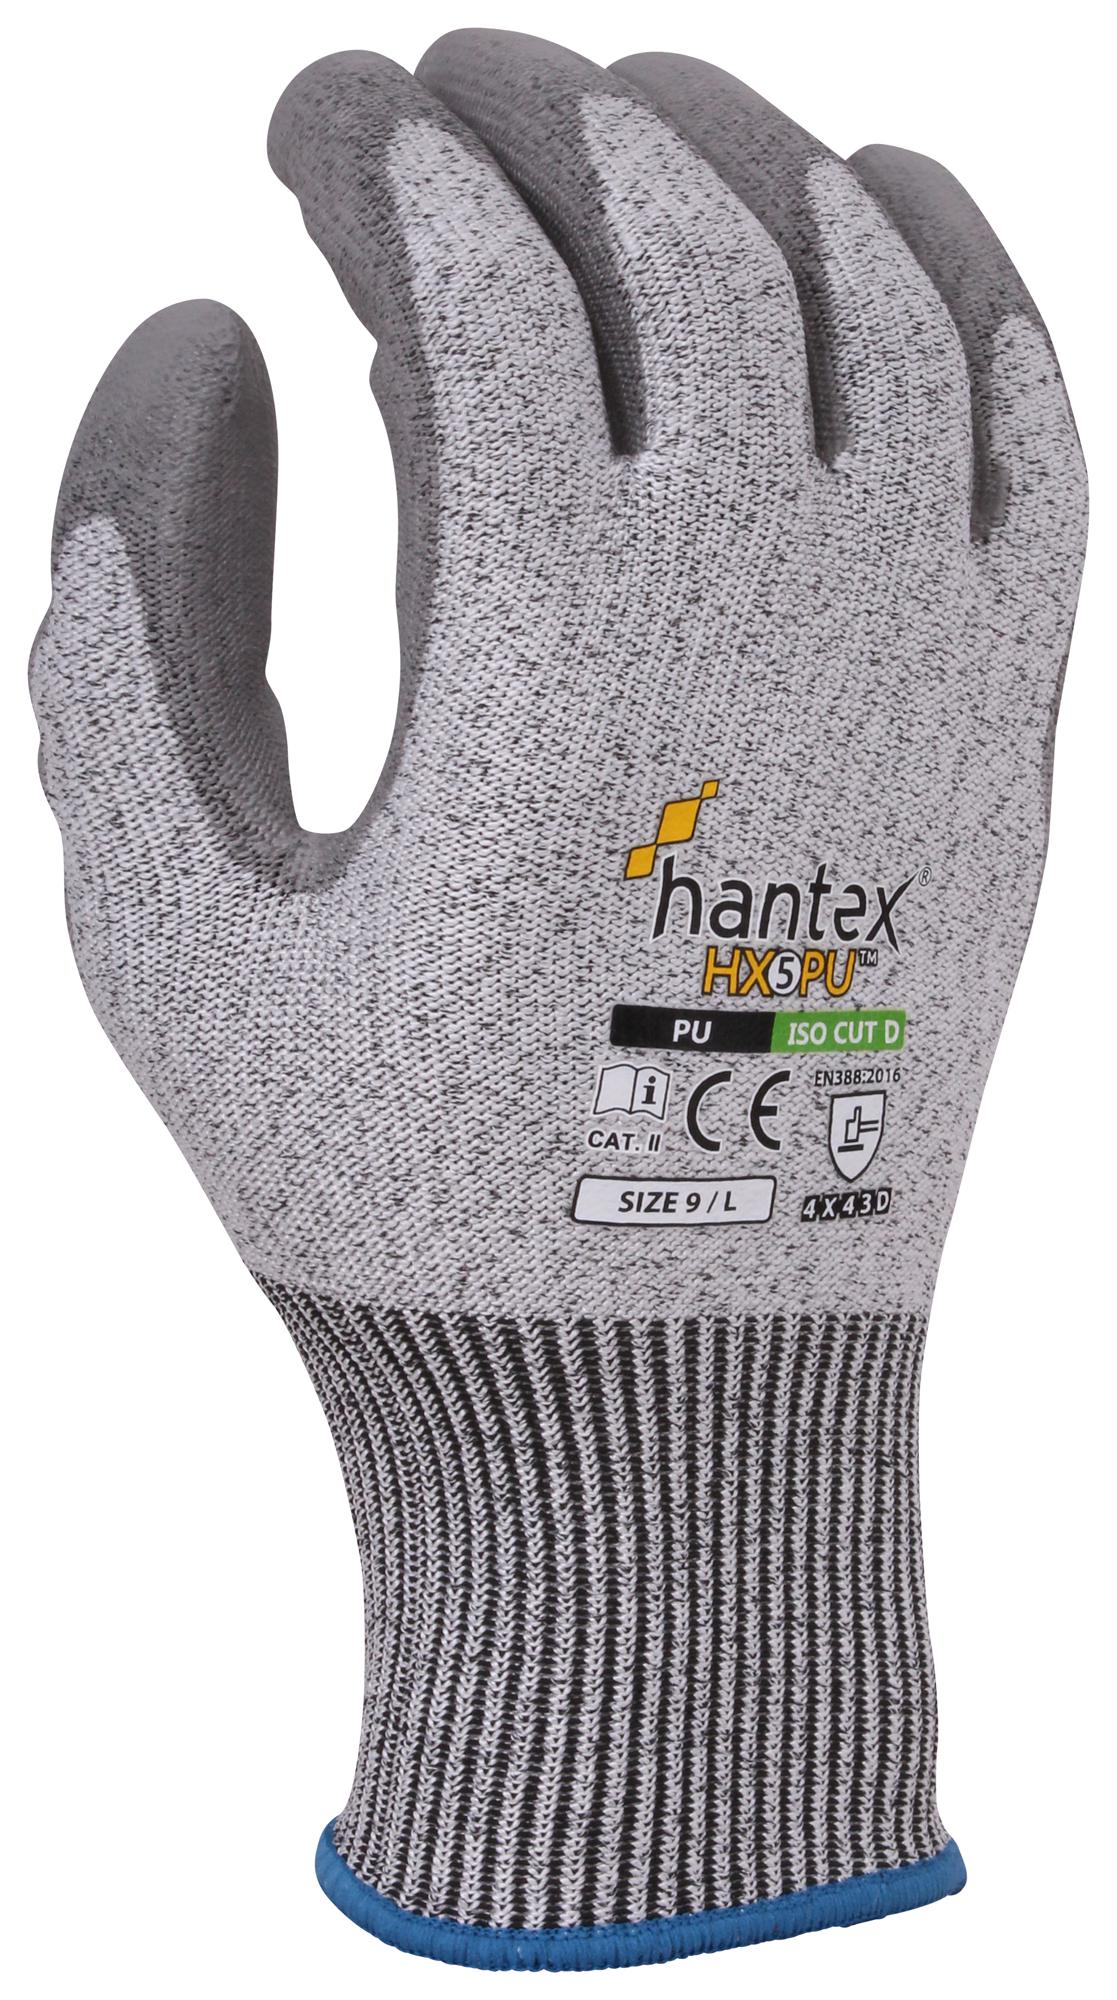 Uci G/hantex-Hx5/pu/09 Gloves, Hppe, Grey, L